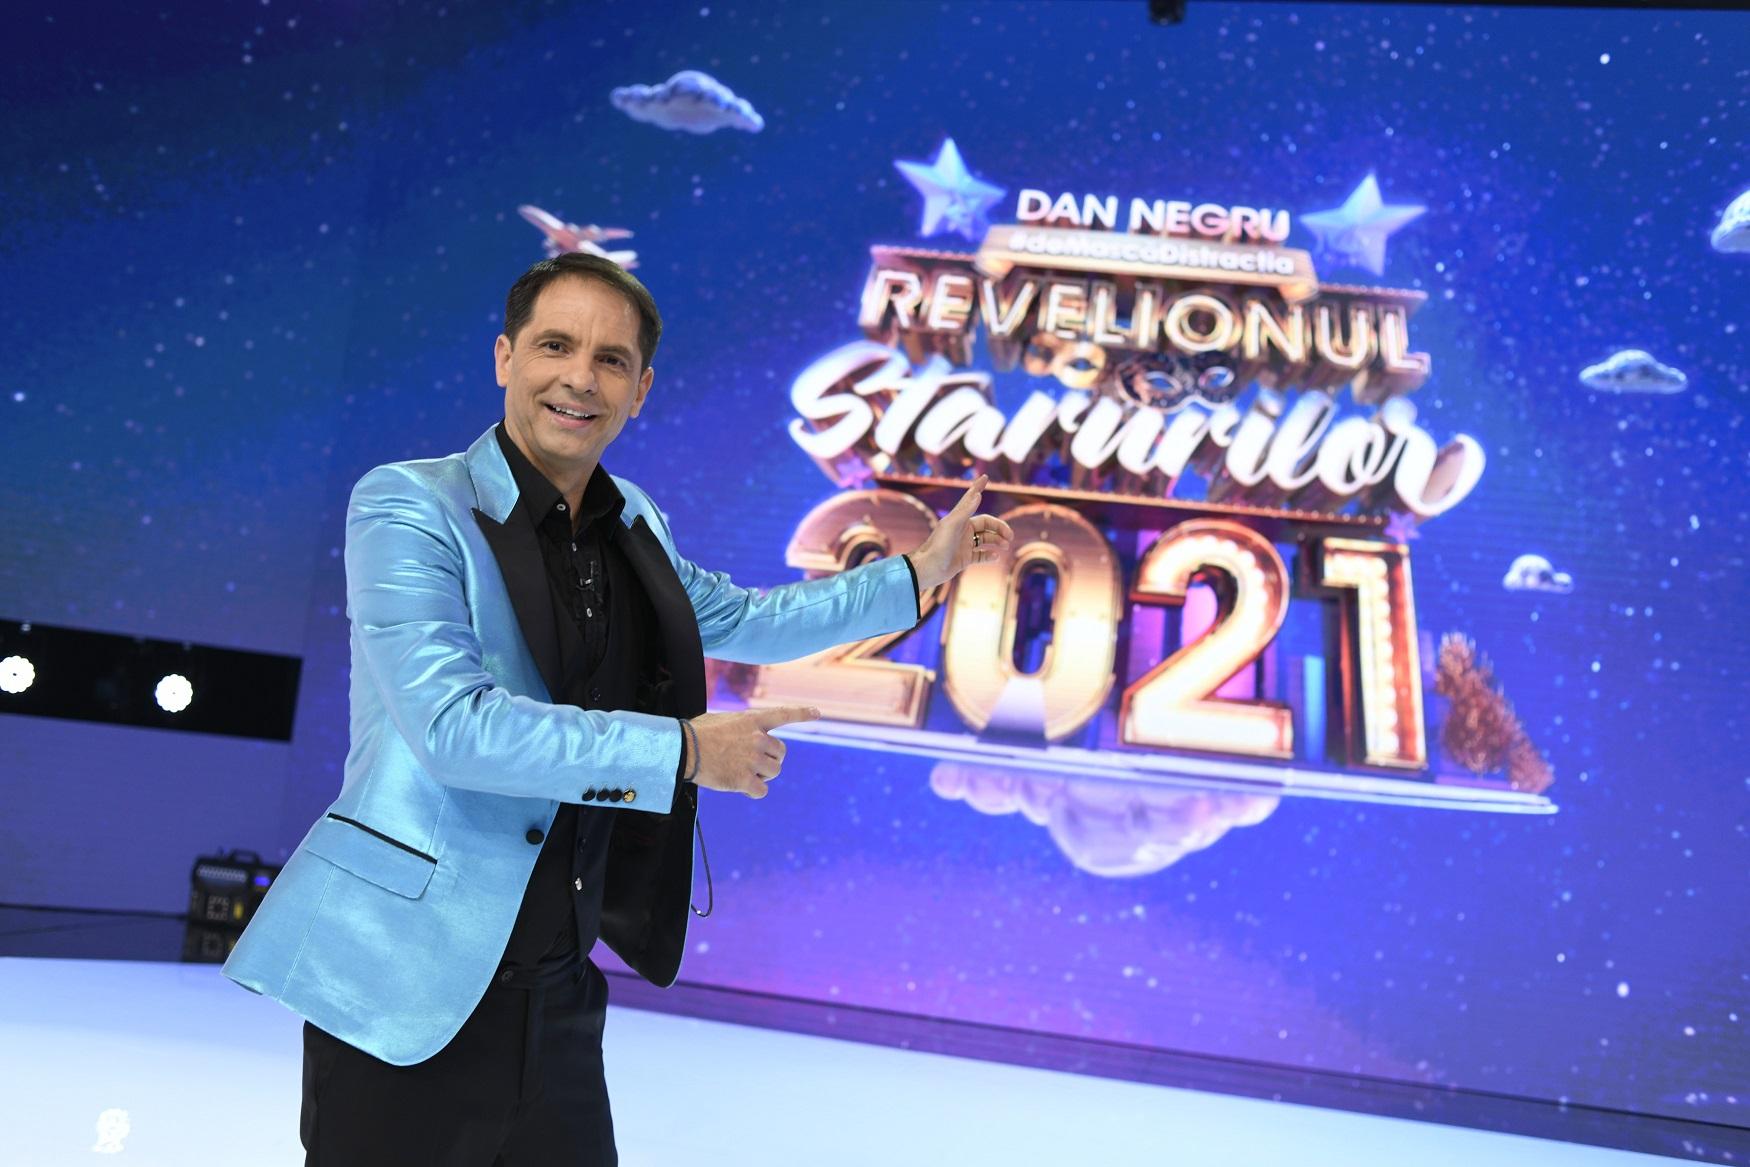 Revelionul Starurilor 2021, prezentat de Dan Negru la Antena 1, aduce surprize uriașe! Care sunt secretele măștilor